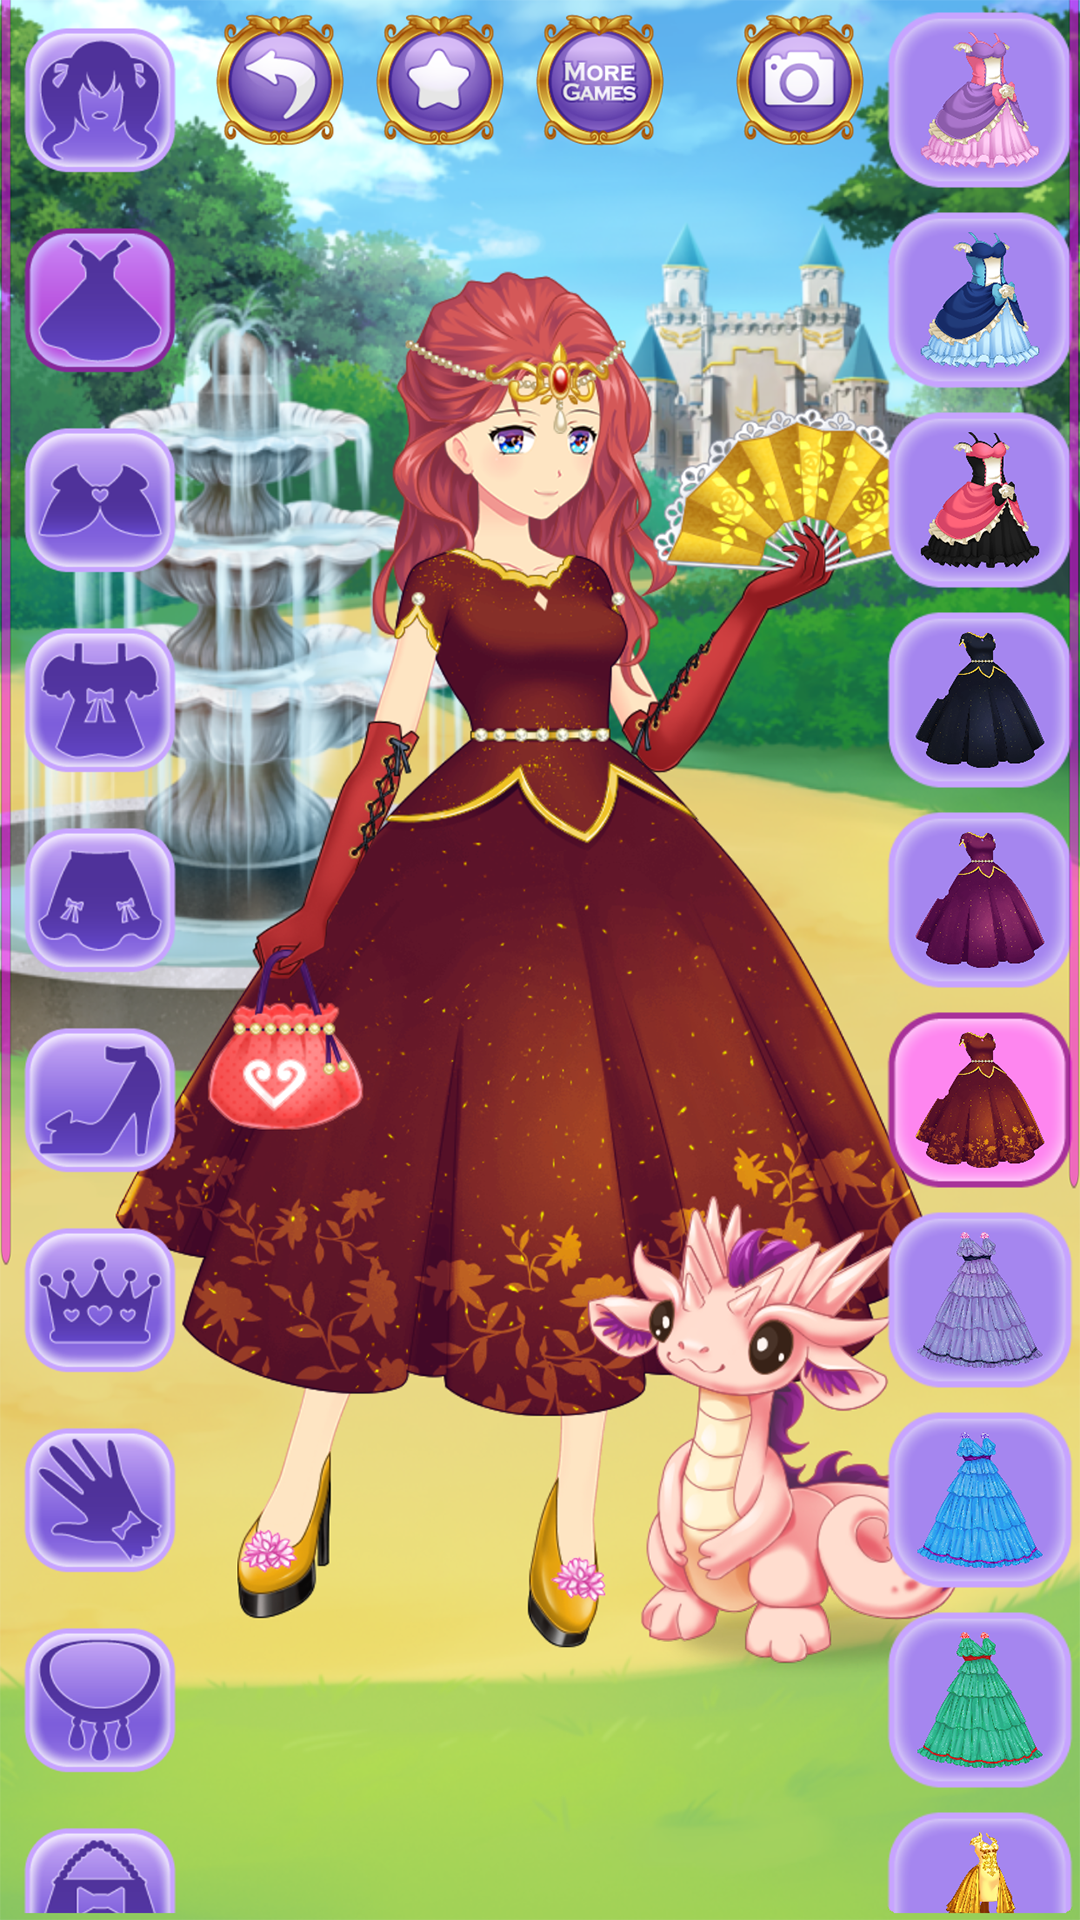 Screenshot 1 of एनीम राजकुमारी ड्रेस अप गेम्स 1.2.1